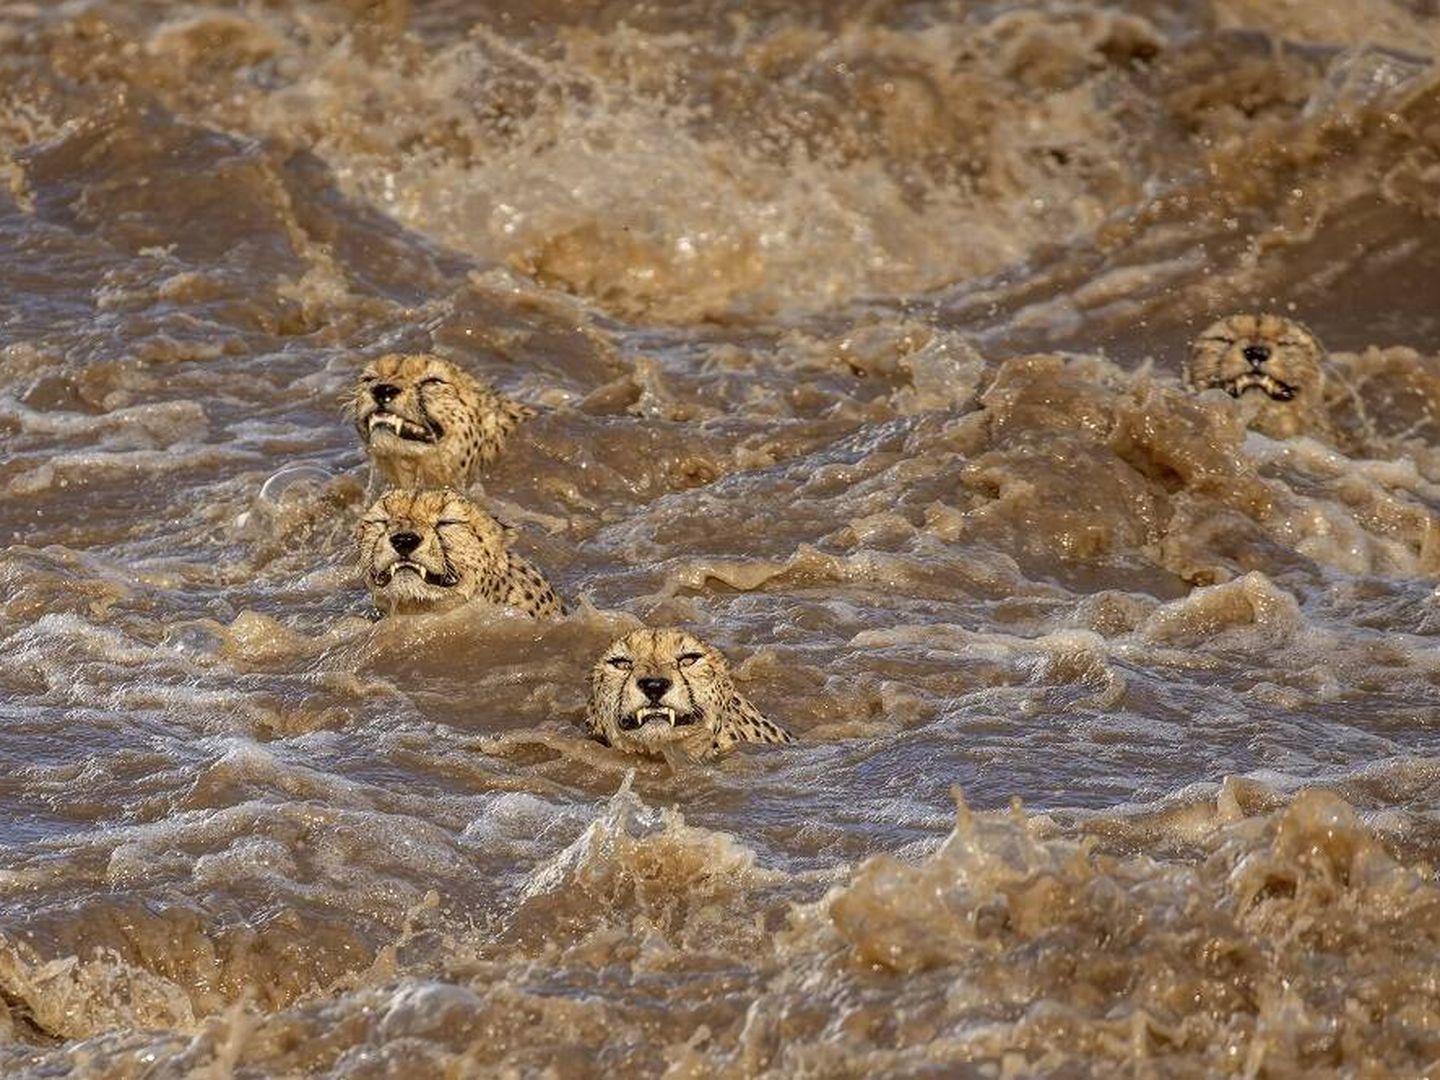 Cuatro guepardos tratan de sobrevivir a una inundación. (Buddhilini de Soyza/Wildlife Photographer of the Year)